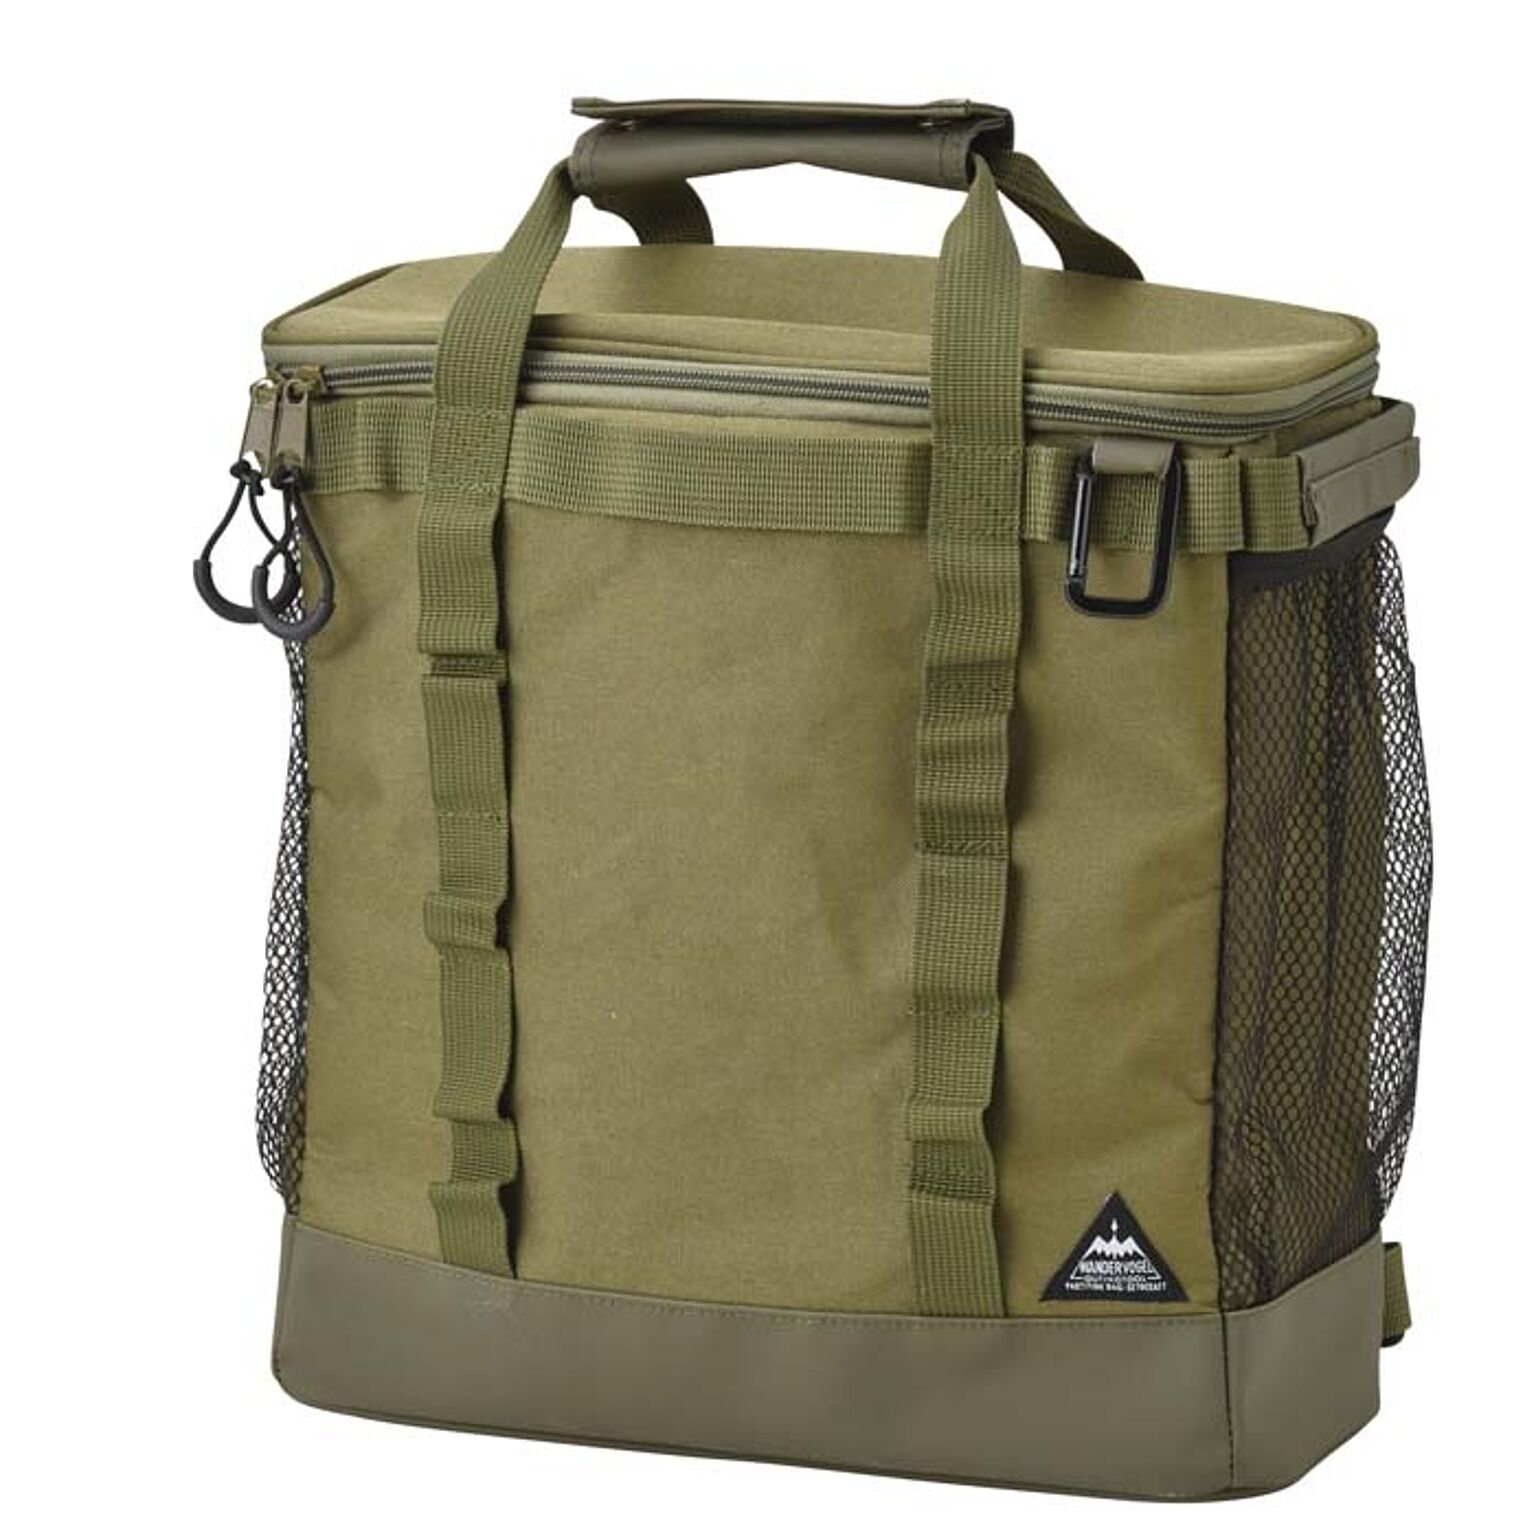 鞄 リュック バッグ キャンプ アウトドア バッグパック 保冷バッグ ボックス  おしゃれ コンパクト セトクラフト Lサイズ 10L